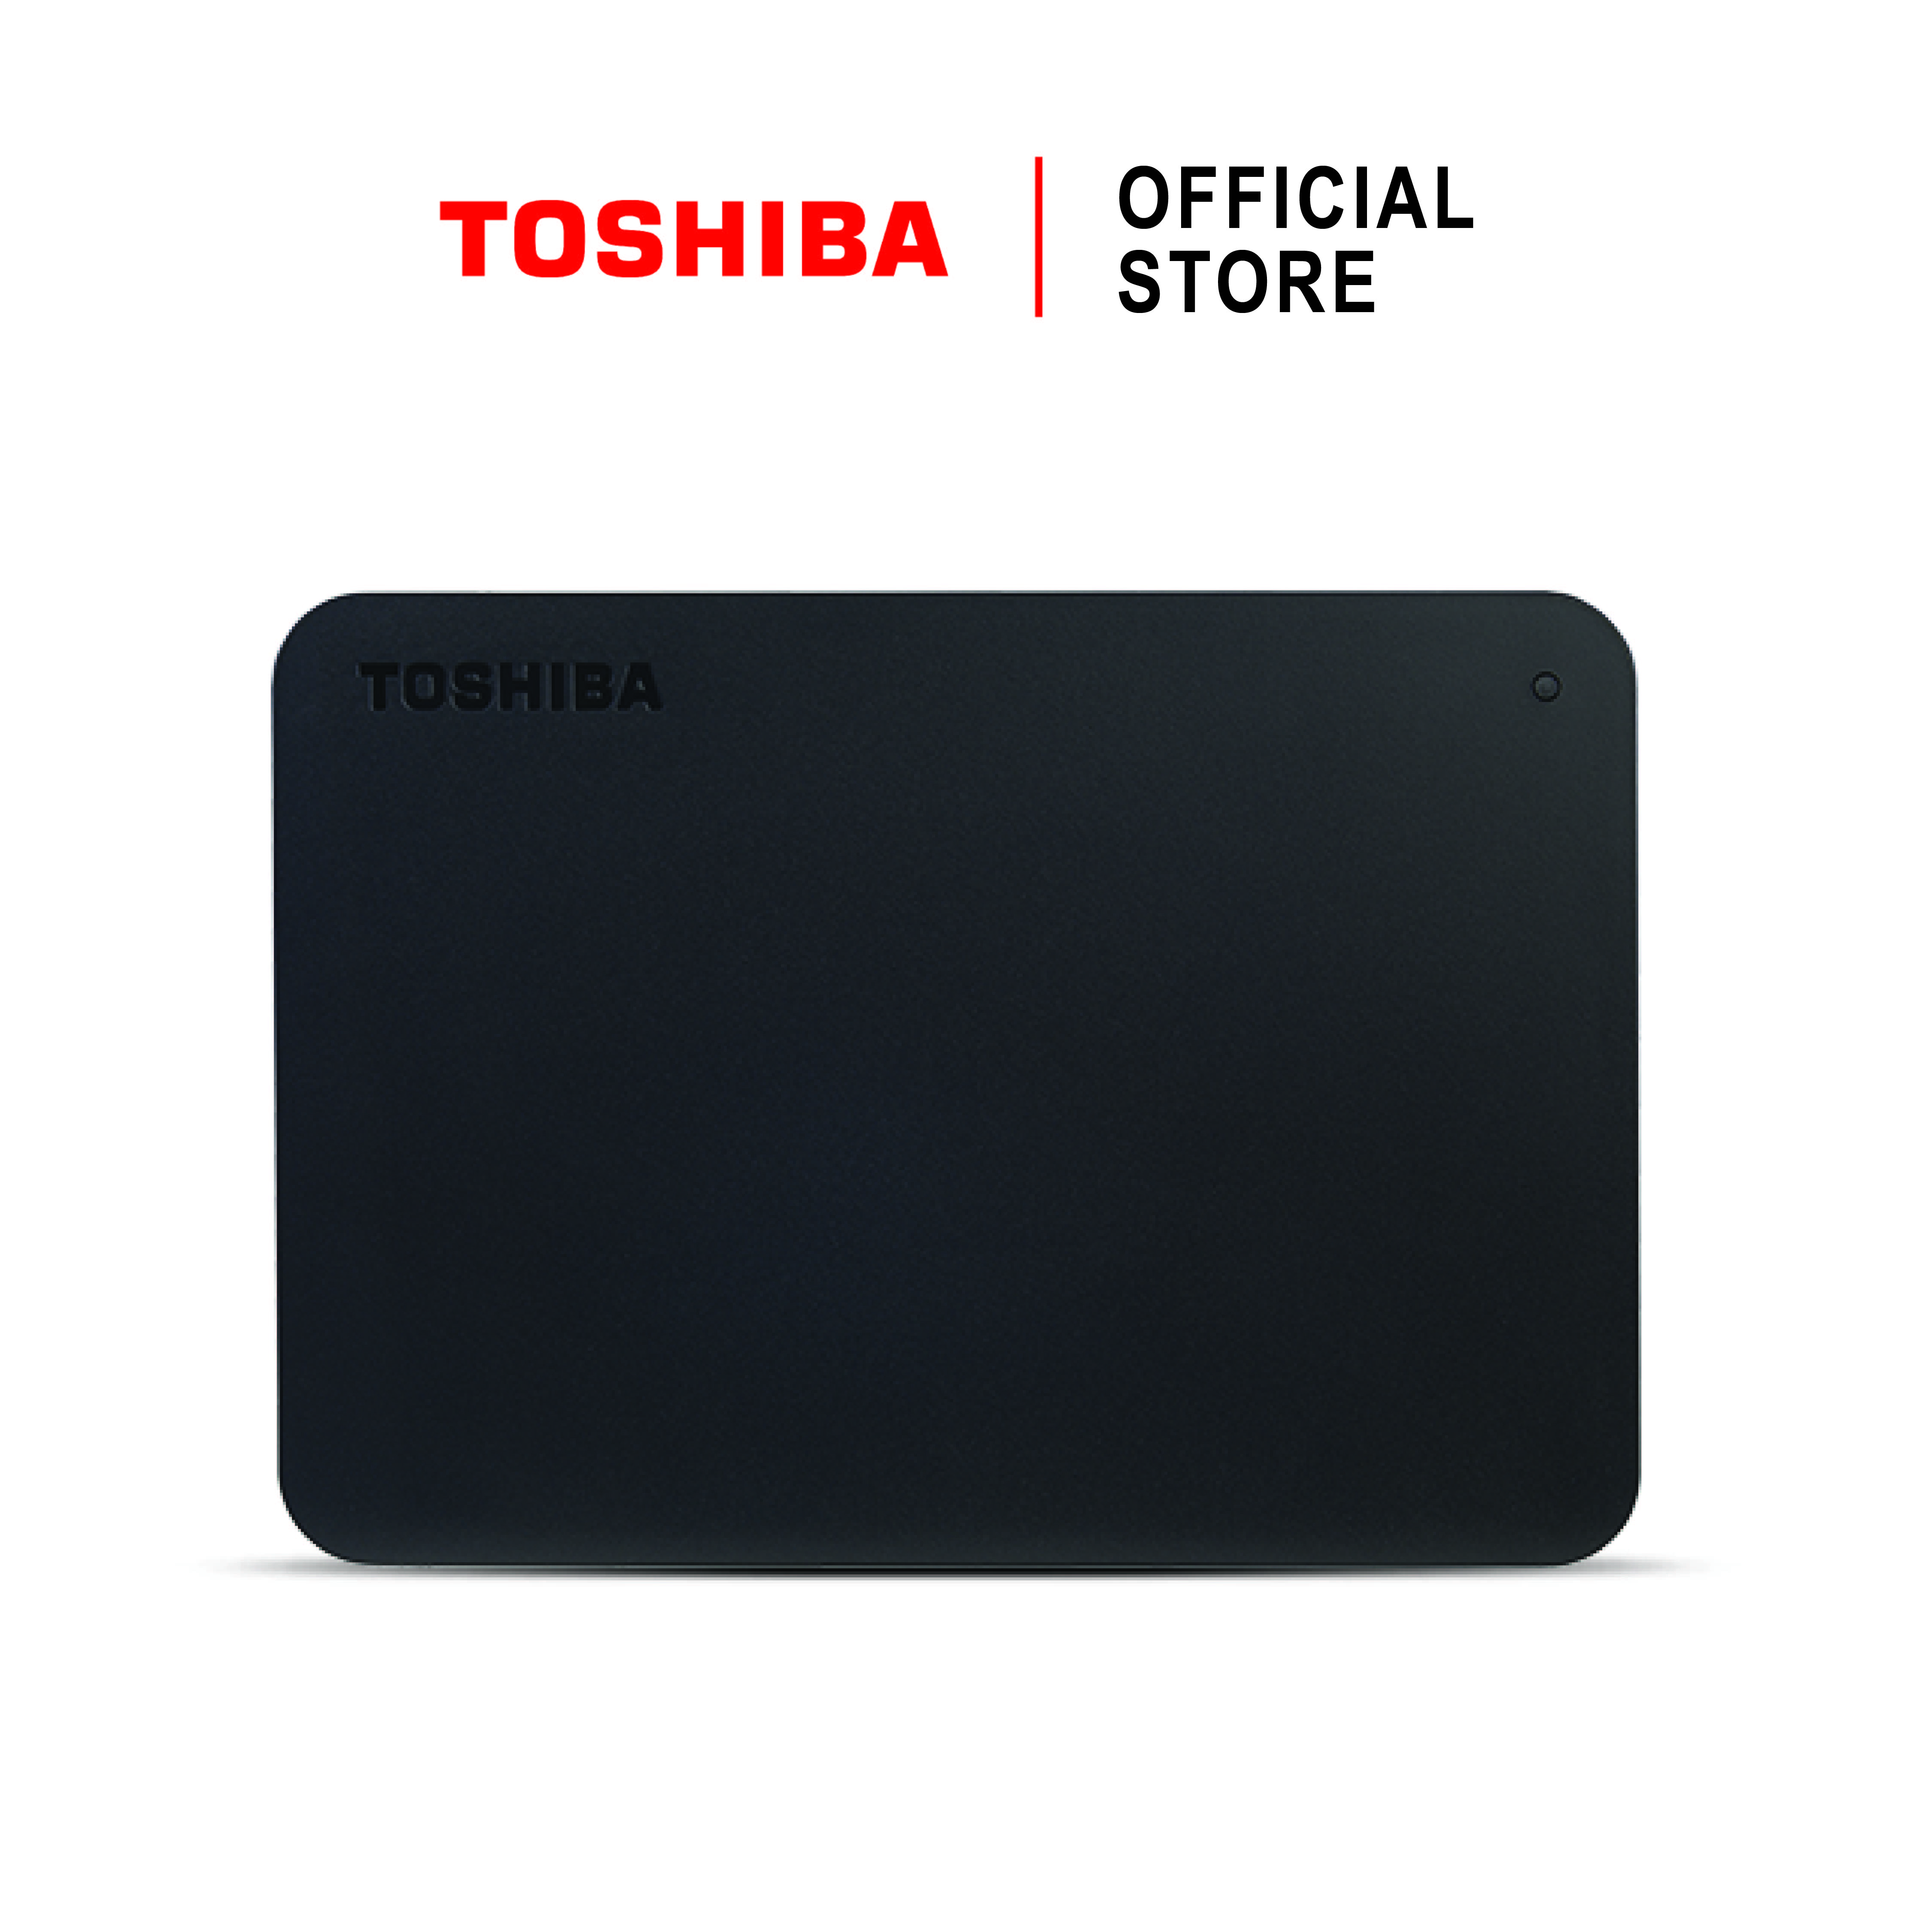 Toshiba External Harddrive (2TB) รุ่น Canvio Basics A3 External HDD Black 2TB USB3.2